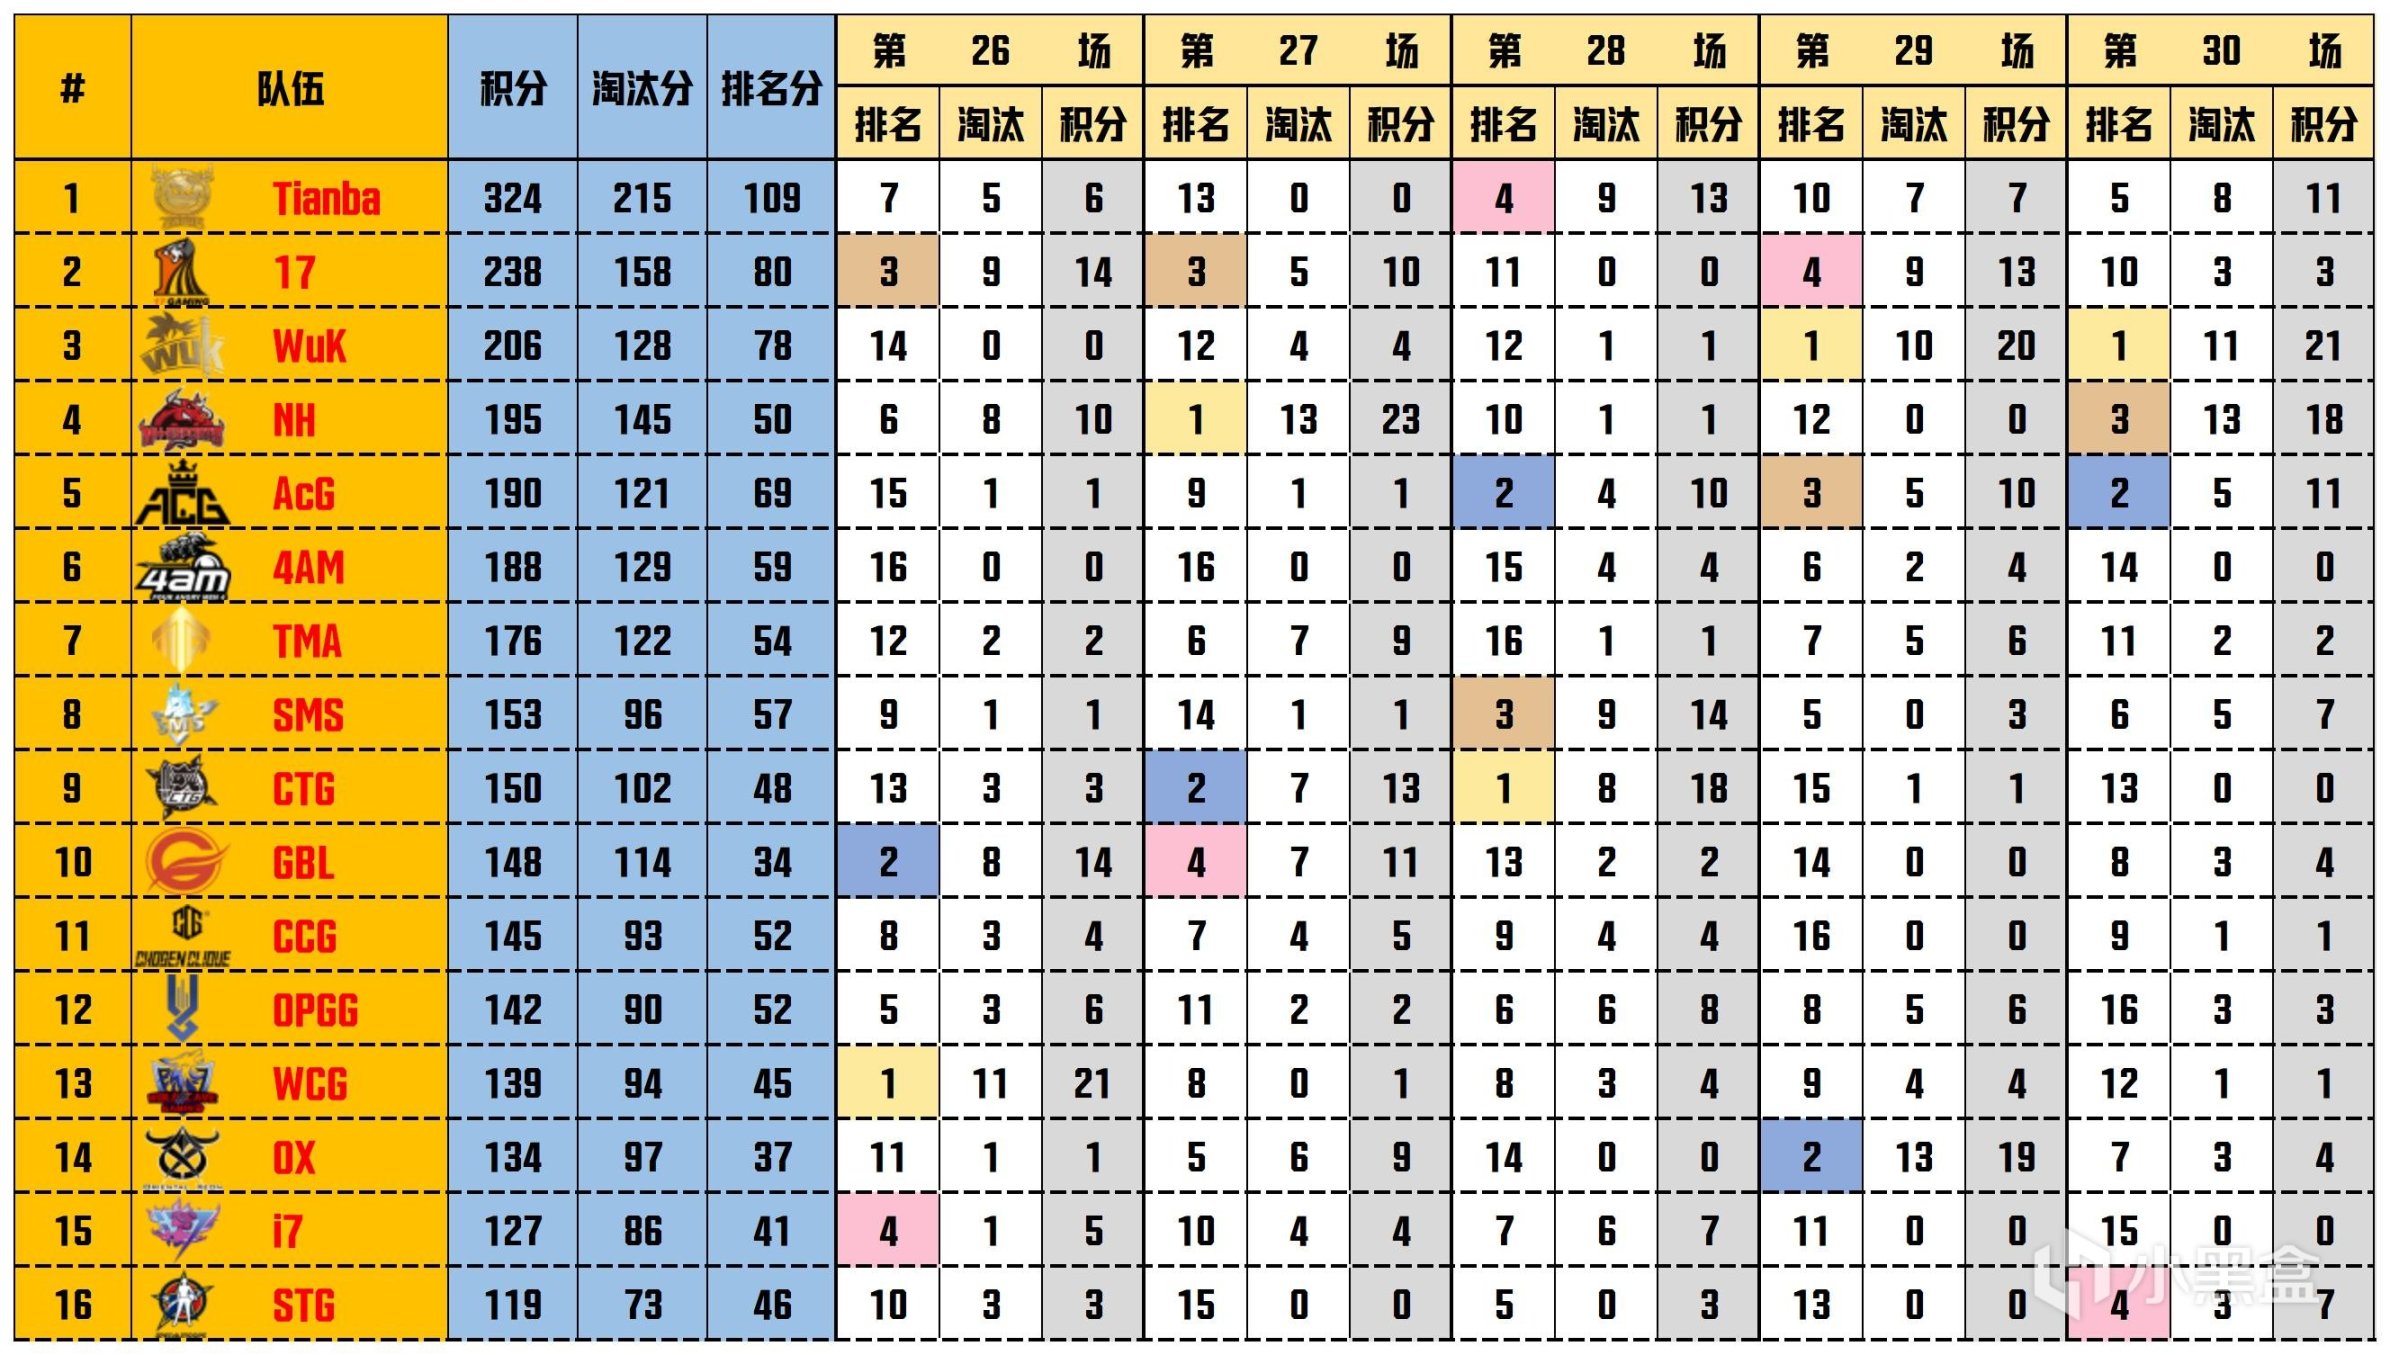 【数据流】天命杯S10,Tianba 324分夺得冠军，LongSkr战神61淘汰-第2张